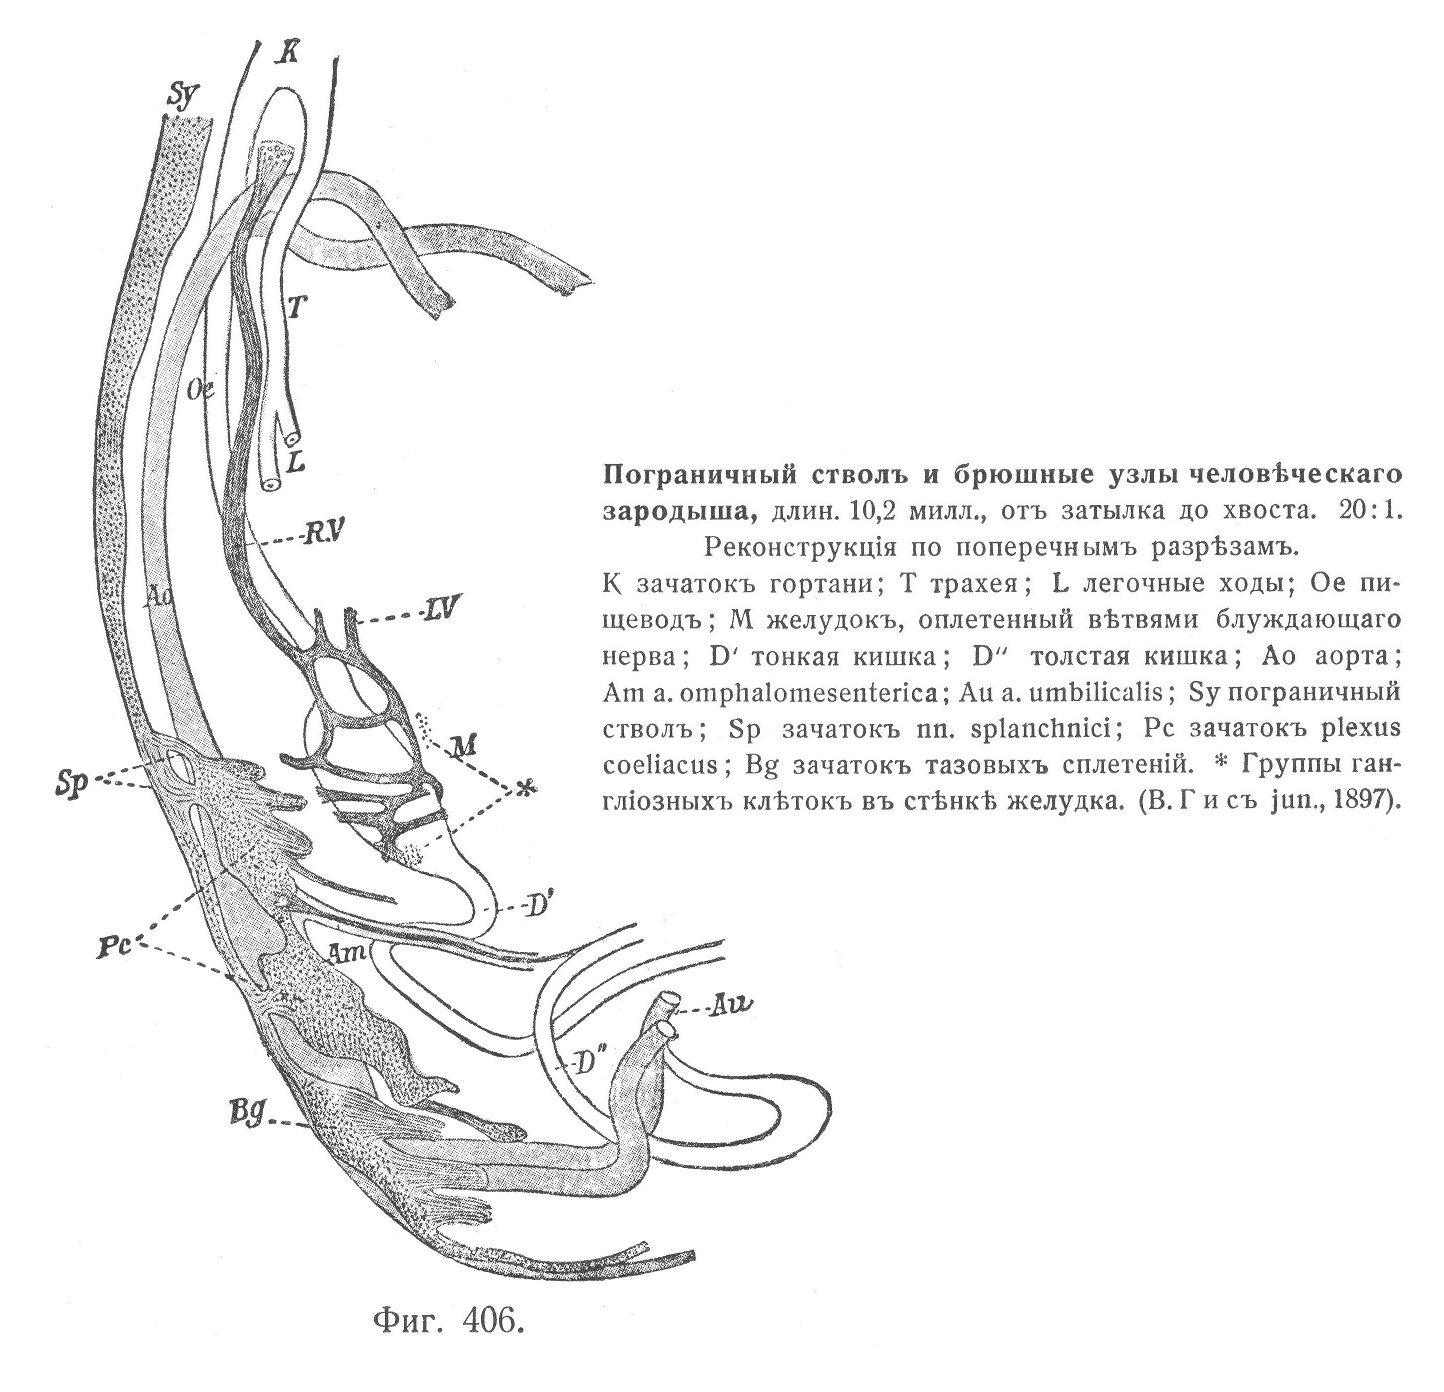 Пограничный стволъ и брюшные узлы человѣческаго зародыша, длин. 10,2 милл., отъ затылка до хвоста. 20:1.